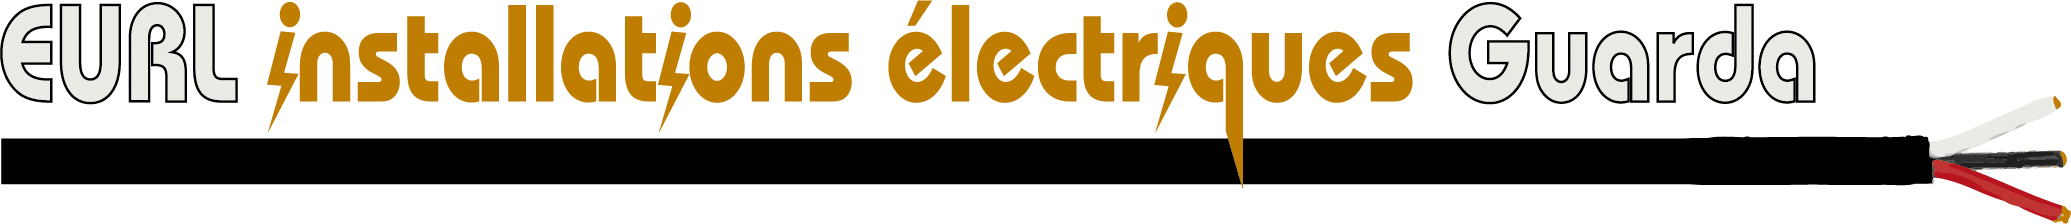 Installations électriques Guarda : électricien en Île-de-France, pose et vente de matériel électrique, éclairage et luminaires